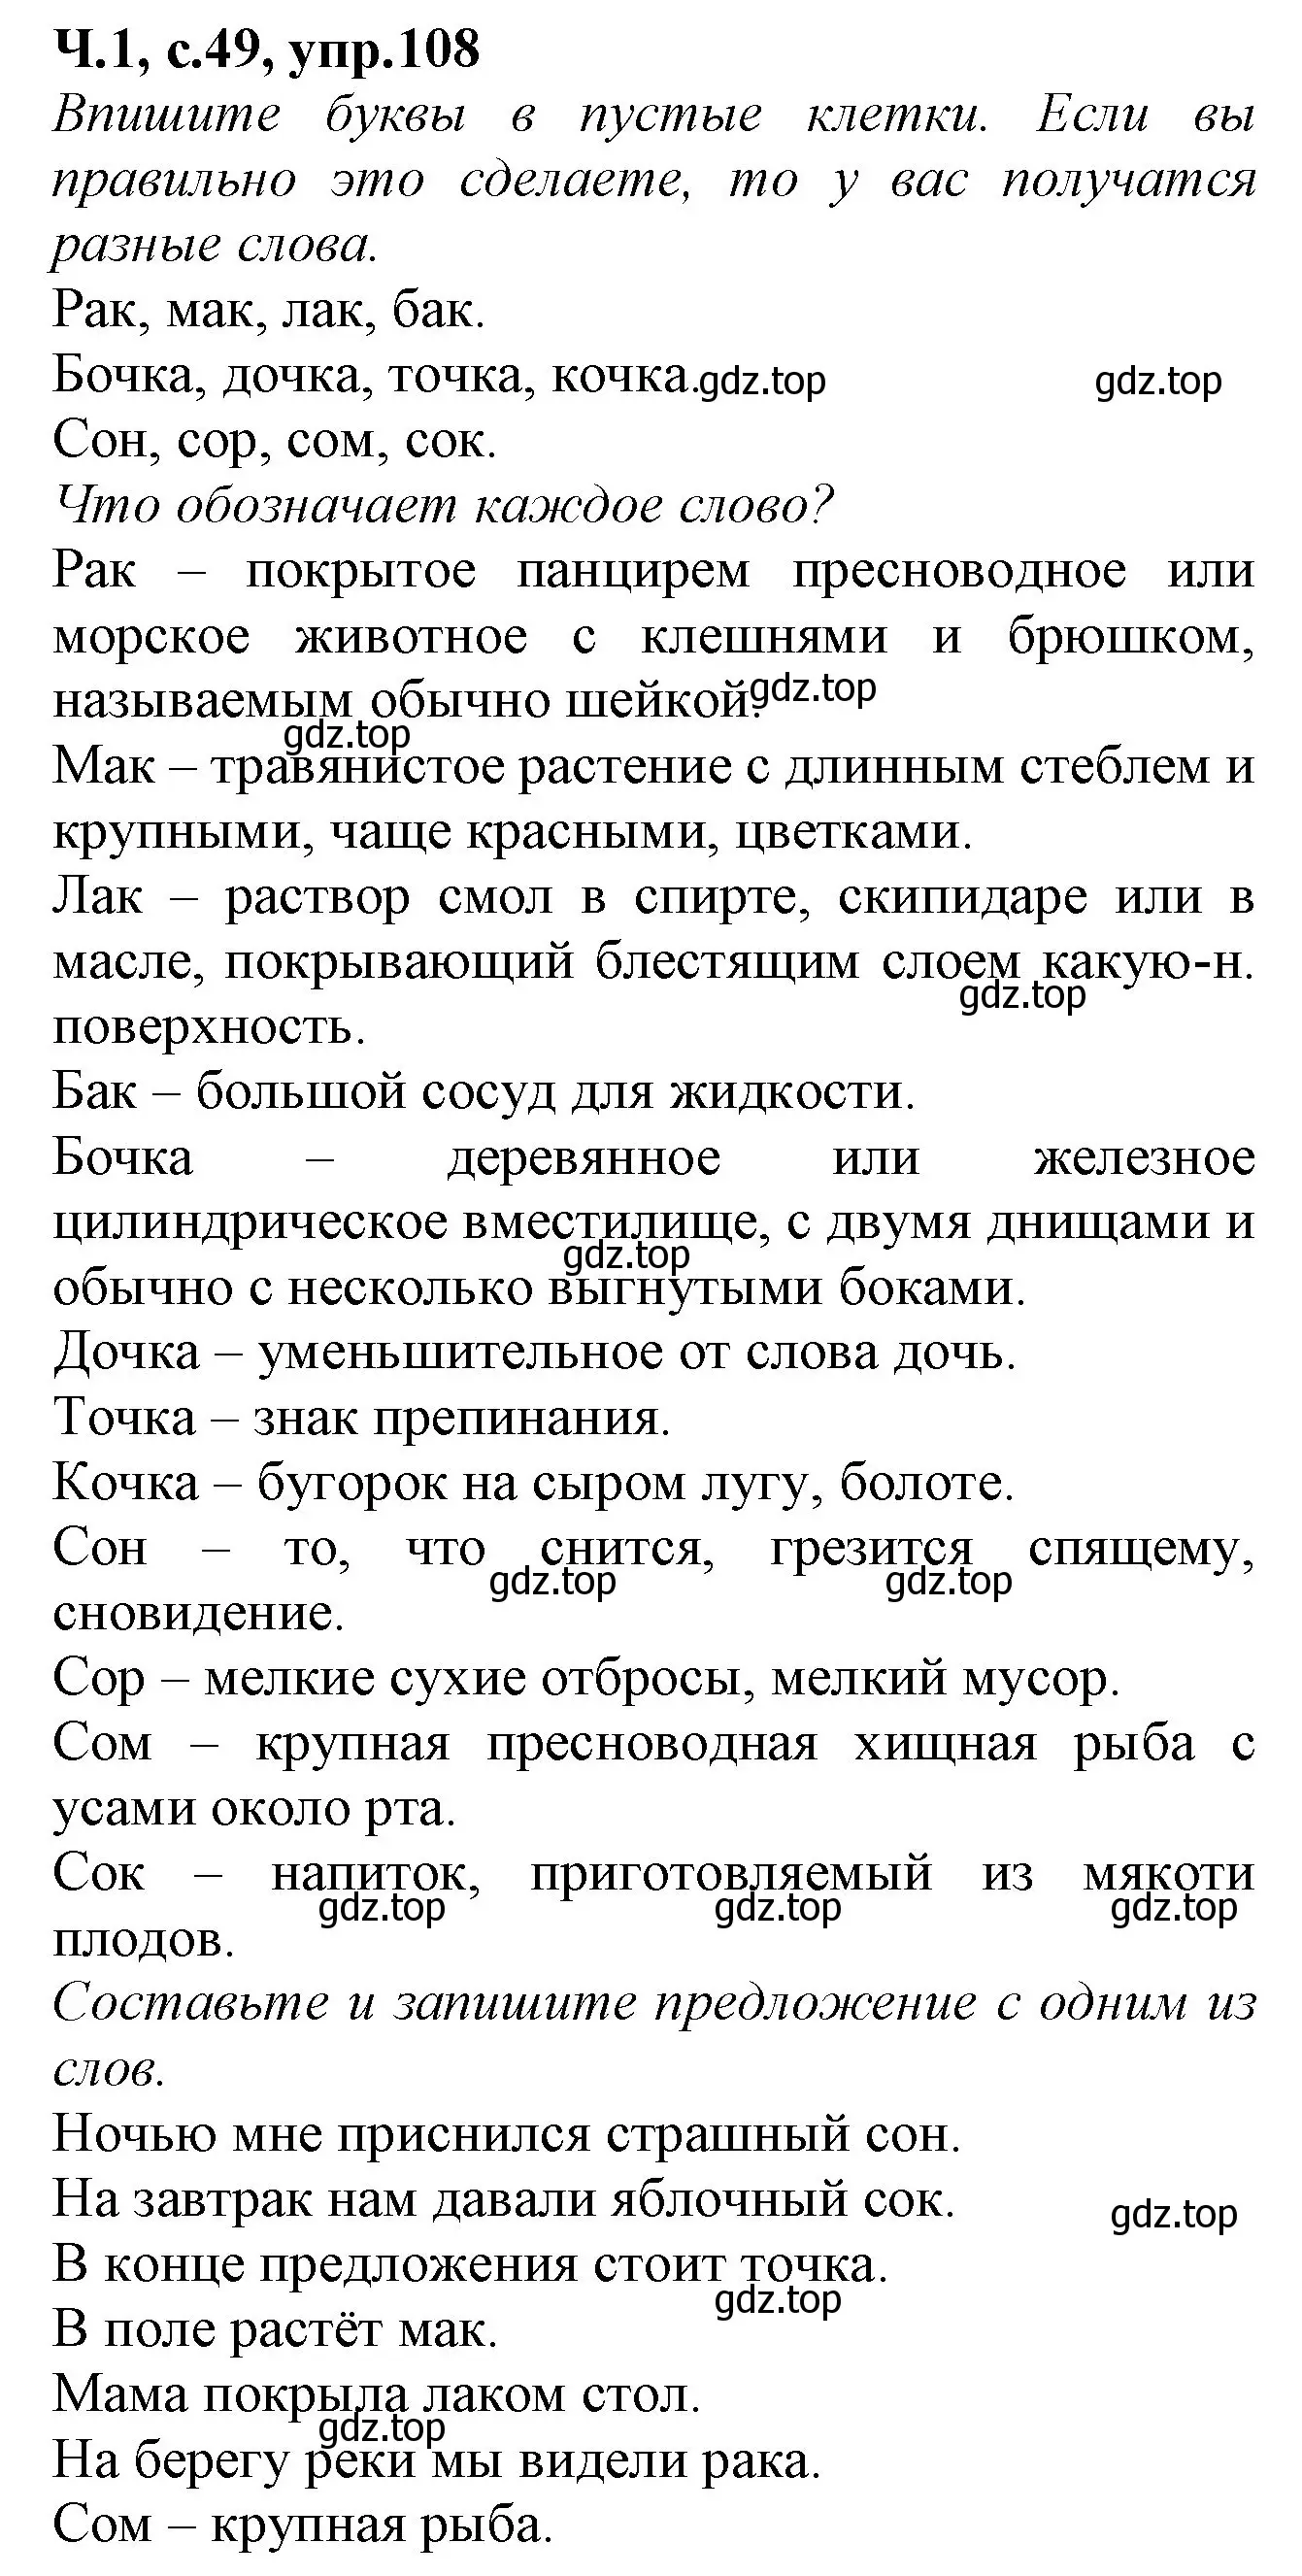 Решение номер 108 (страница 49) гдз по русскому языку 2 класс Канакина, рабочая тетрадь 1 часть